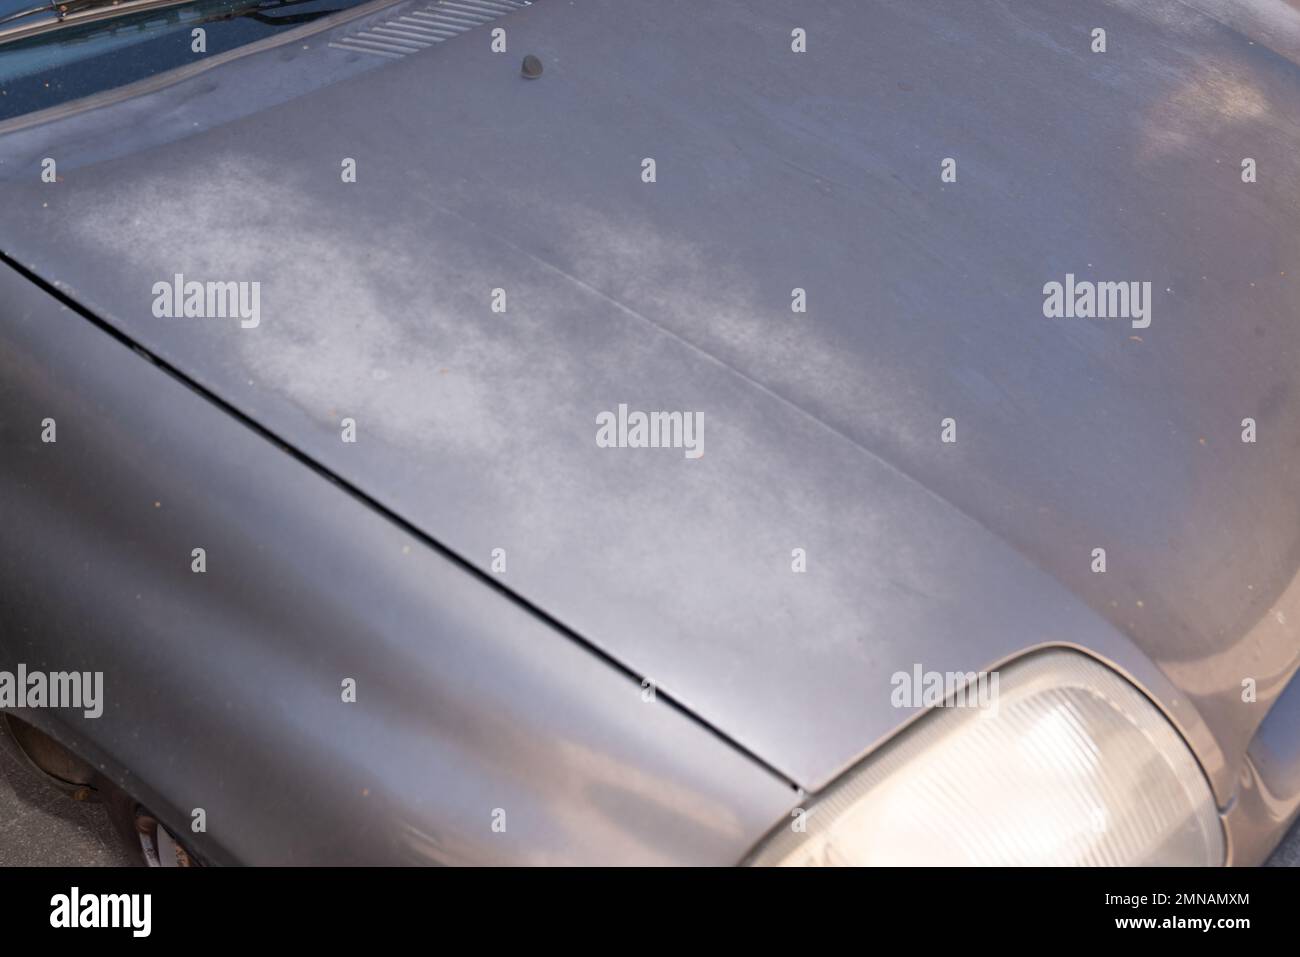 Fond texture rouille sur le capot de la voiture, voiture rouge Photo Stock  - Alamy